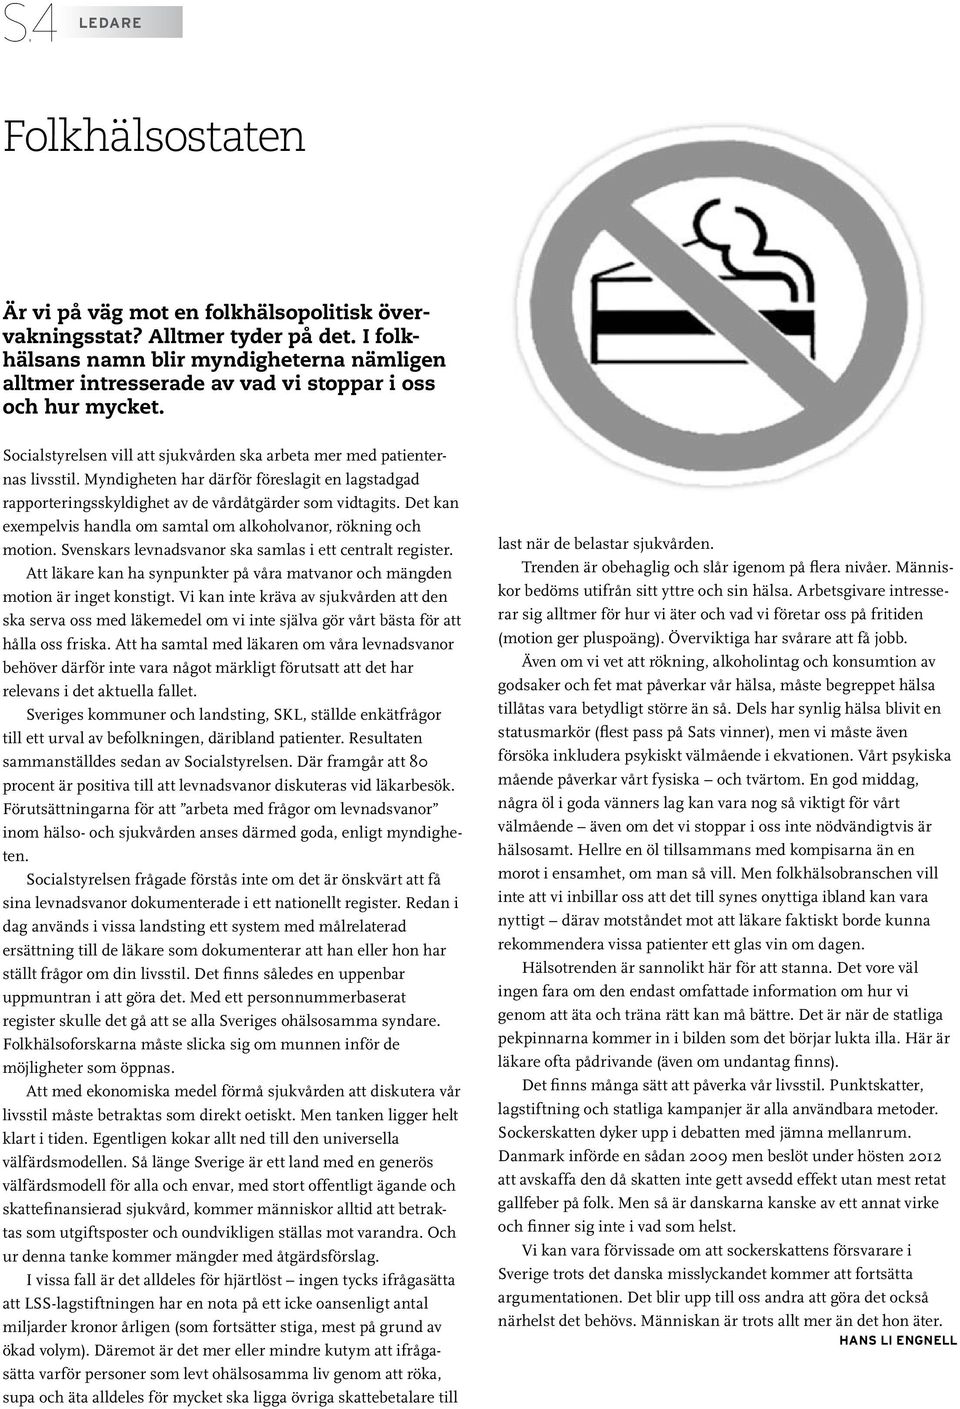 Myndigheten har därför föreslagit en lagstadgad rapporteringsskyldighet av de vårdåtgärder som vidtagits. Det kan exempelvis handla om samtal om alkoholvanor, rökning och motion.